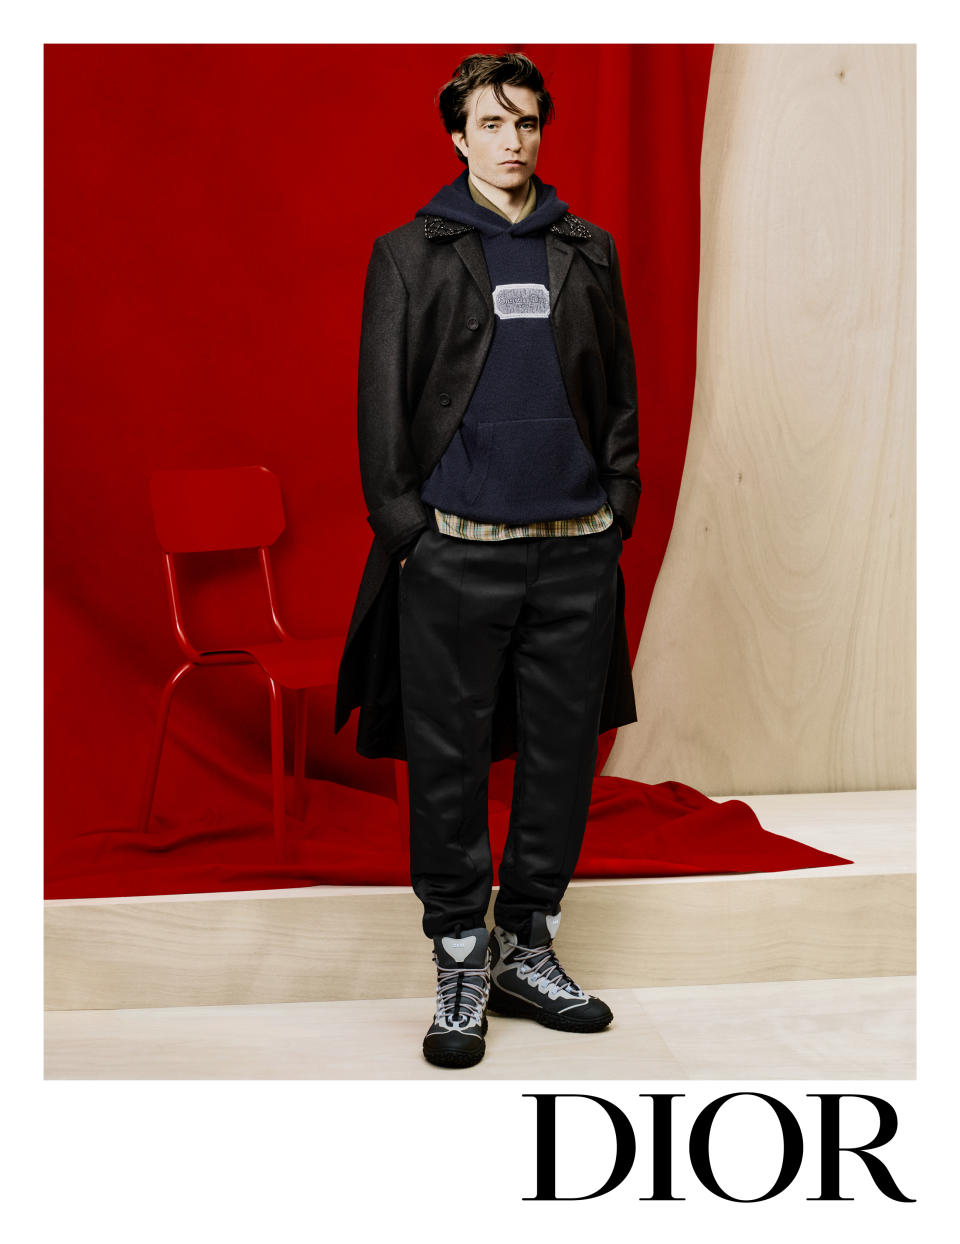 Robert Pattinson in the Dior spring 2023 menswear campaign